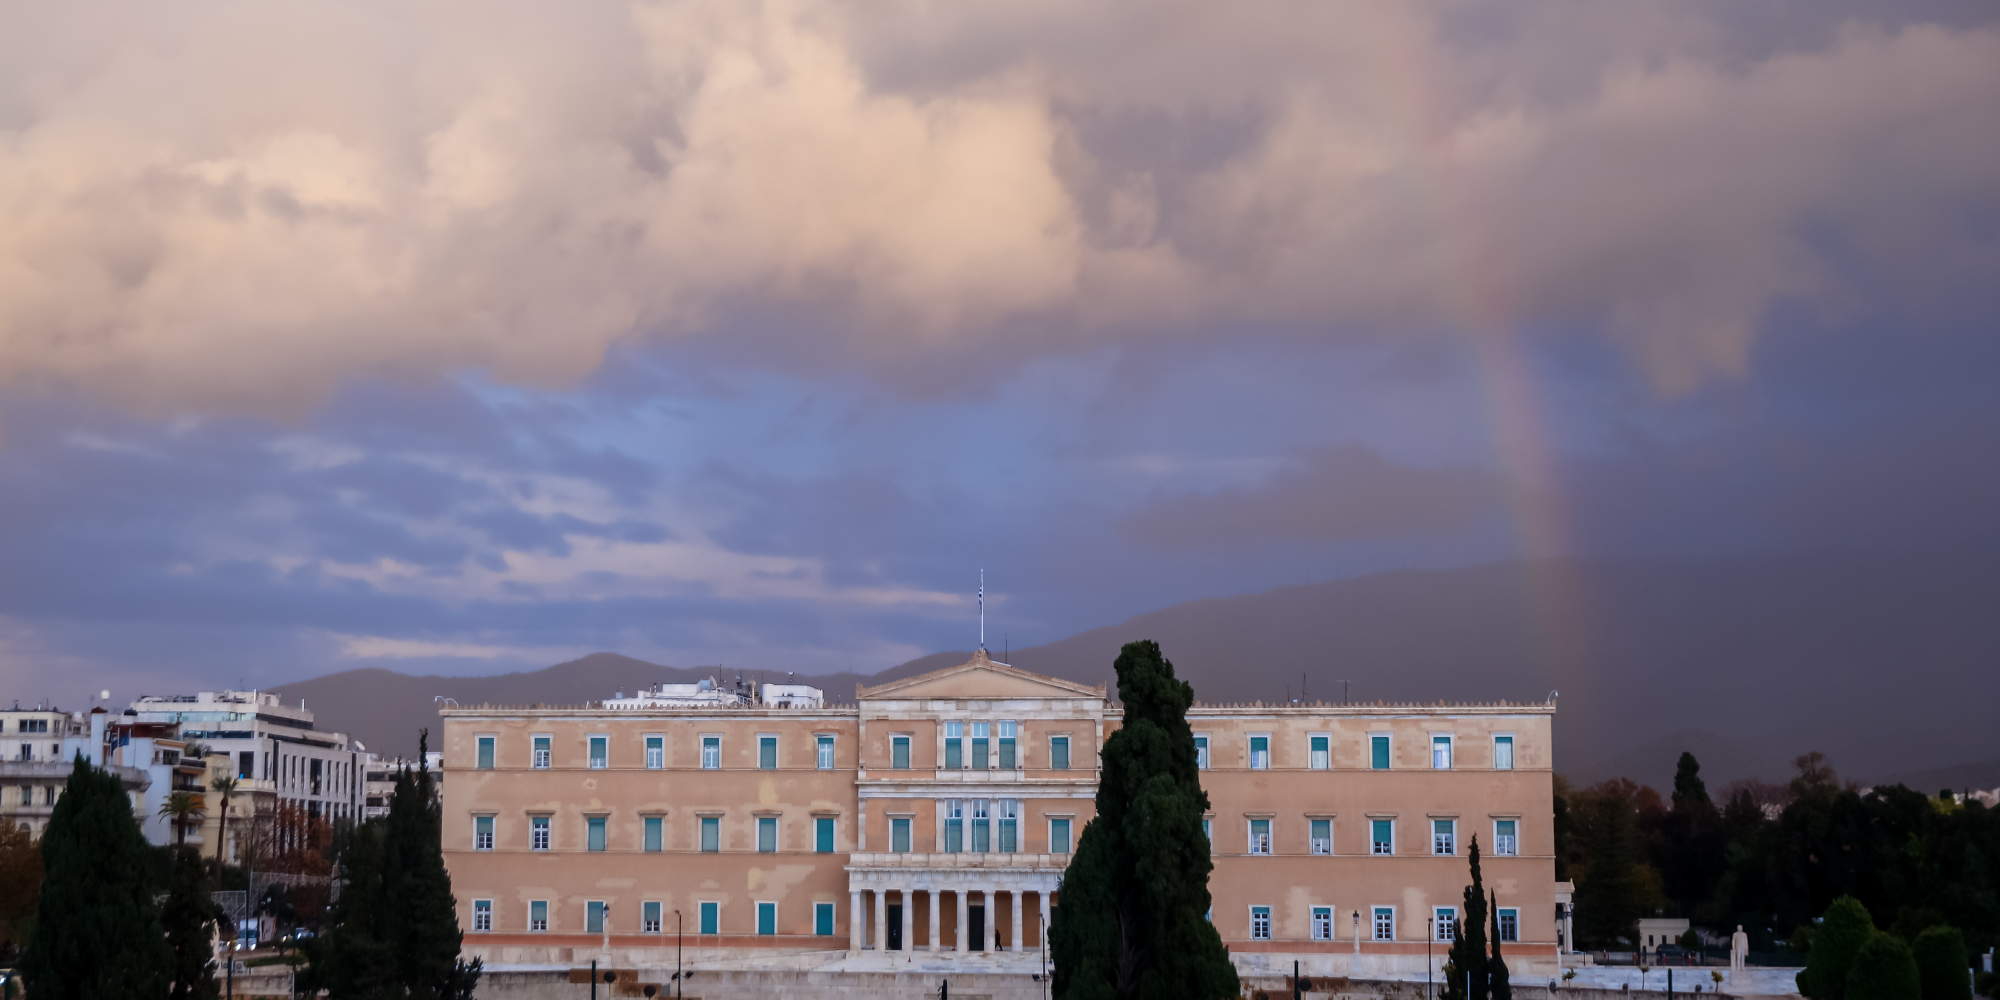 Σύννεφα, αλλά και ουράνιο τόξο πάνω από τη Βουλή των Ελλήνων